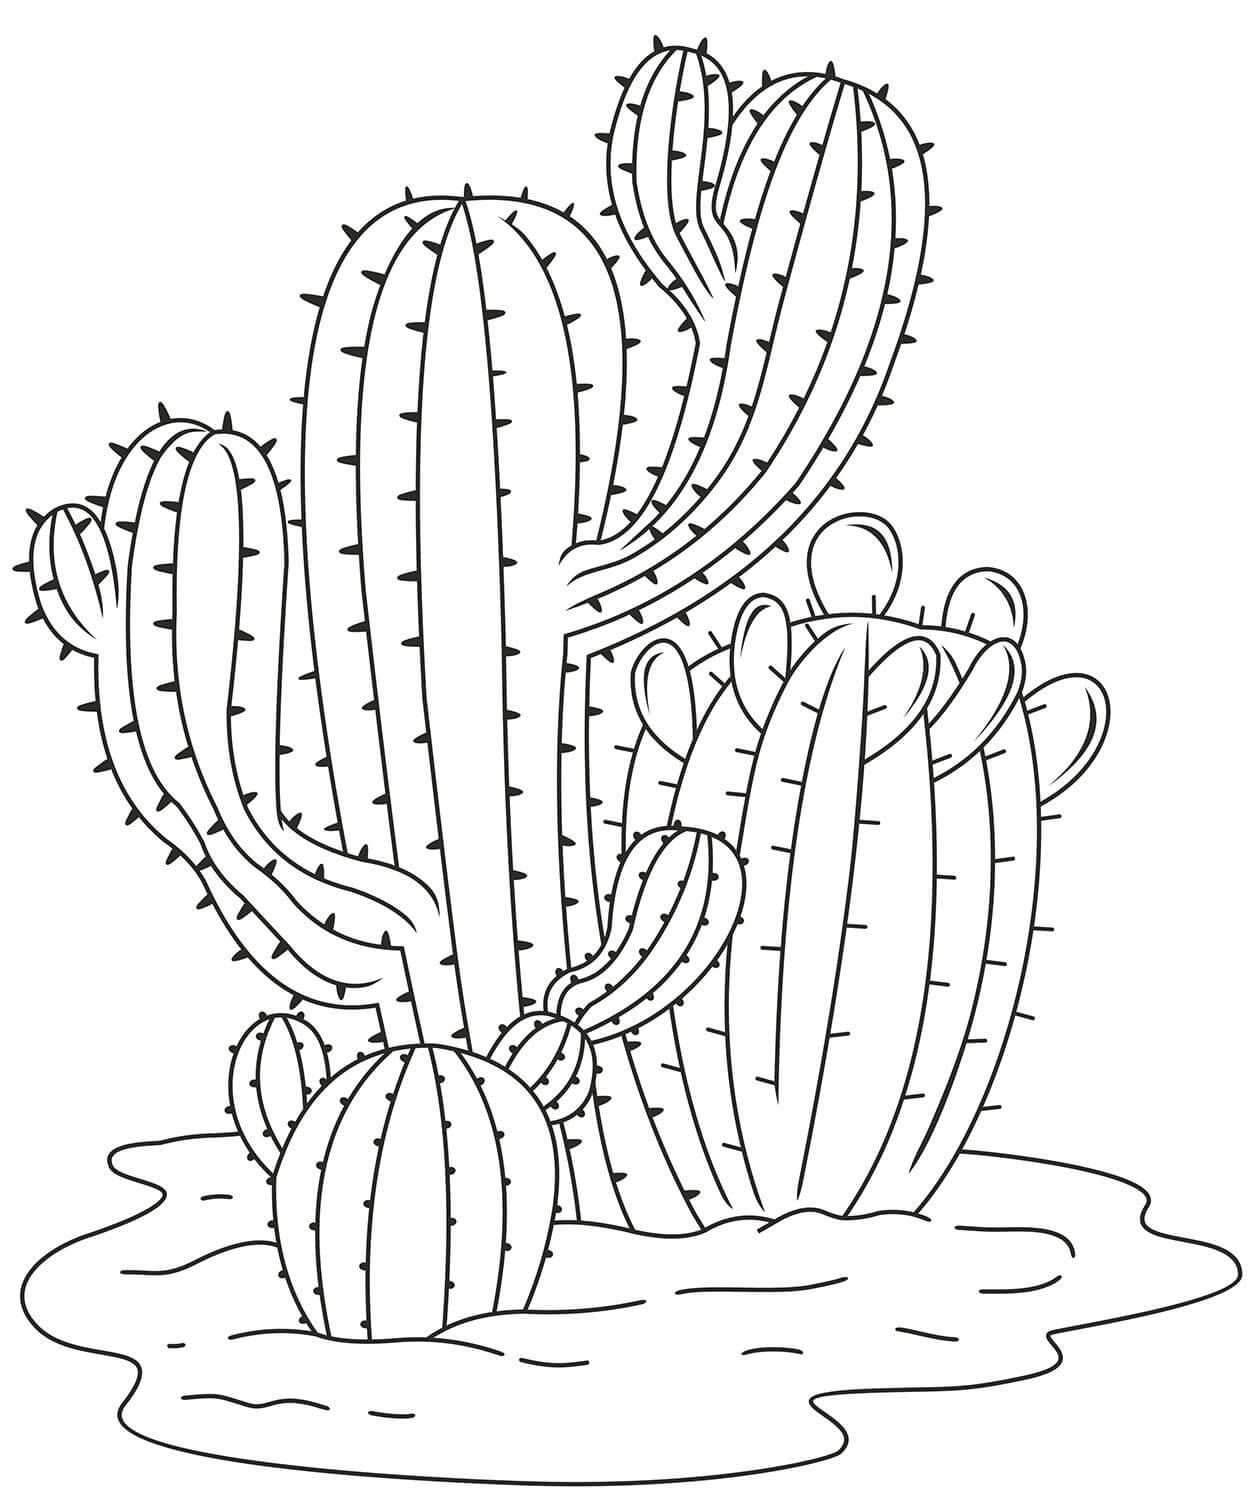 Coloriage Image de cactus de haute qualité